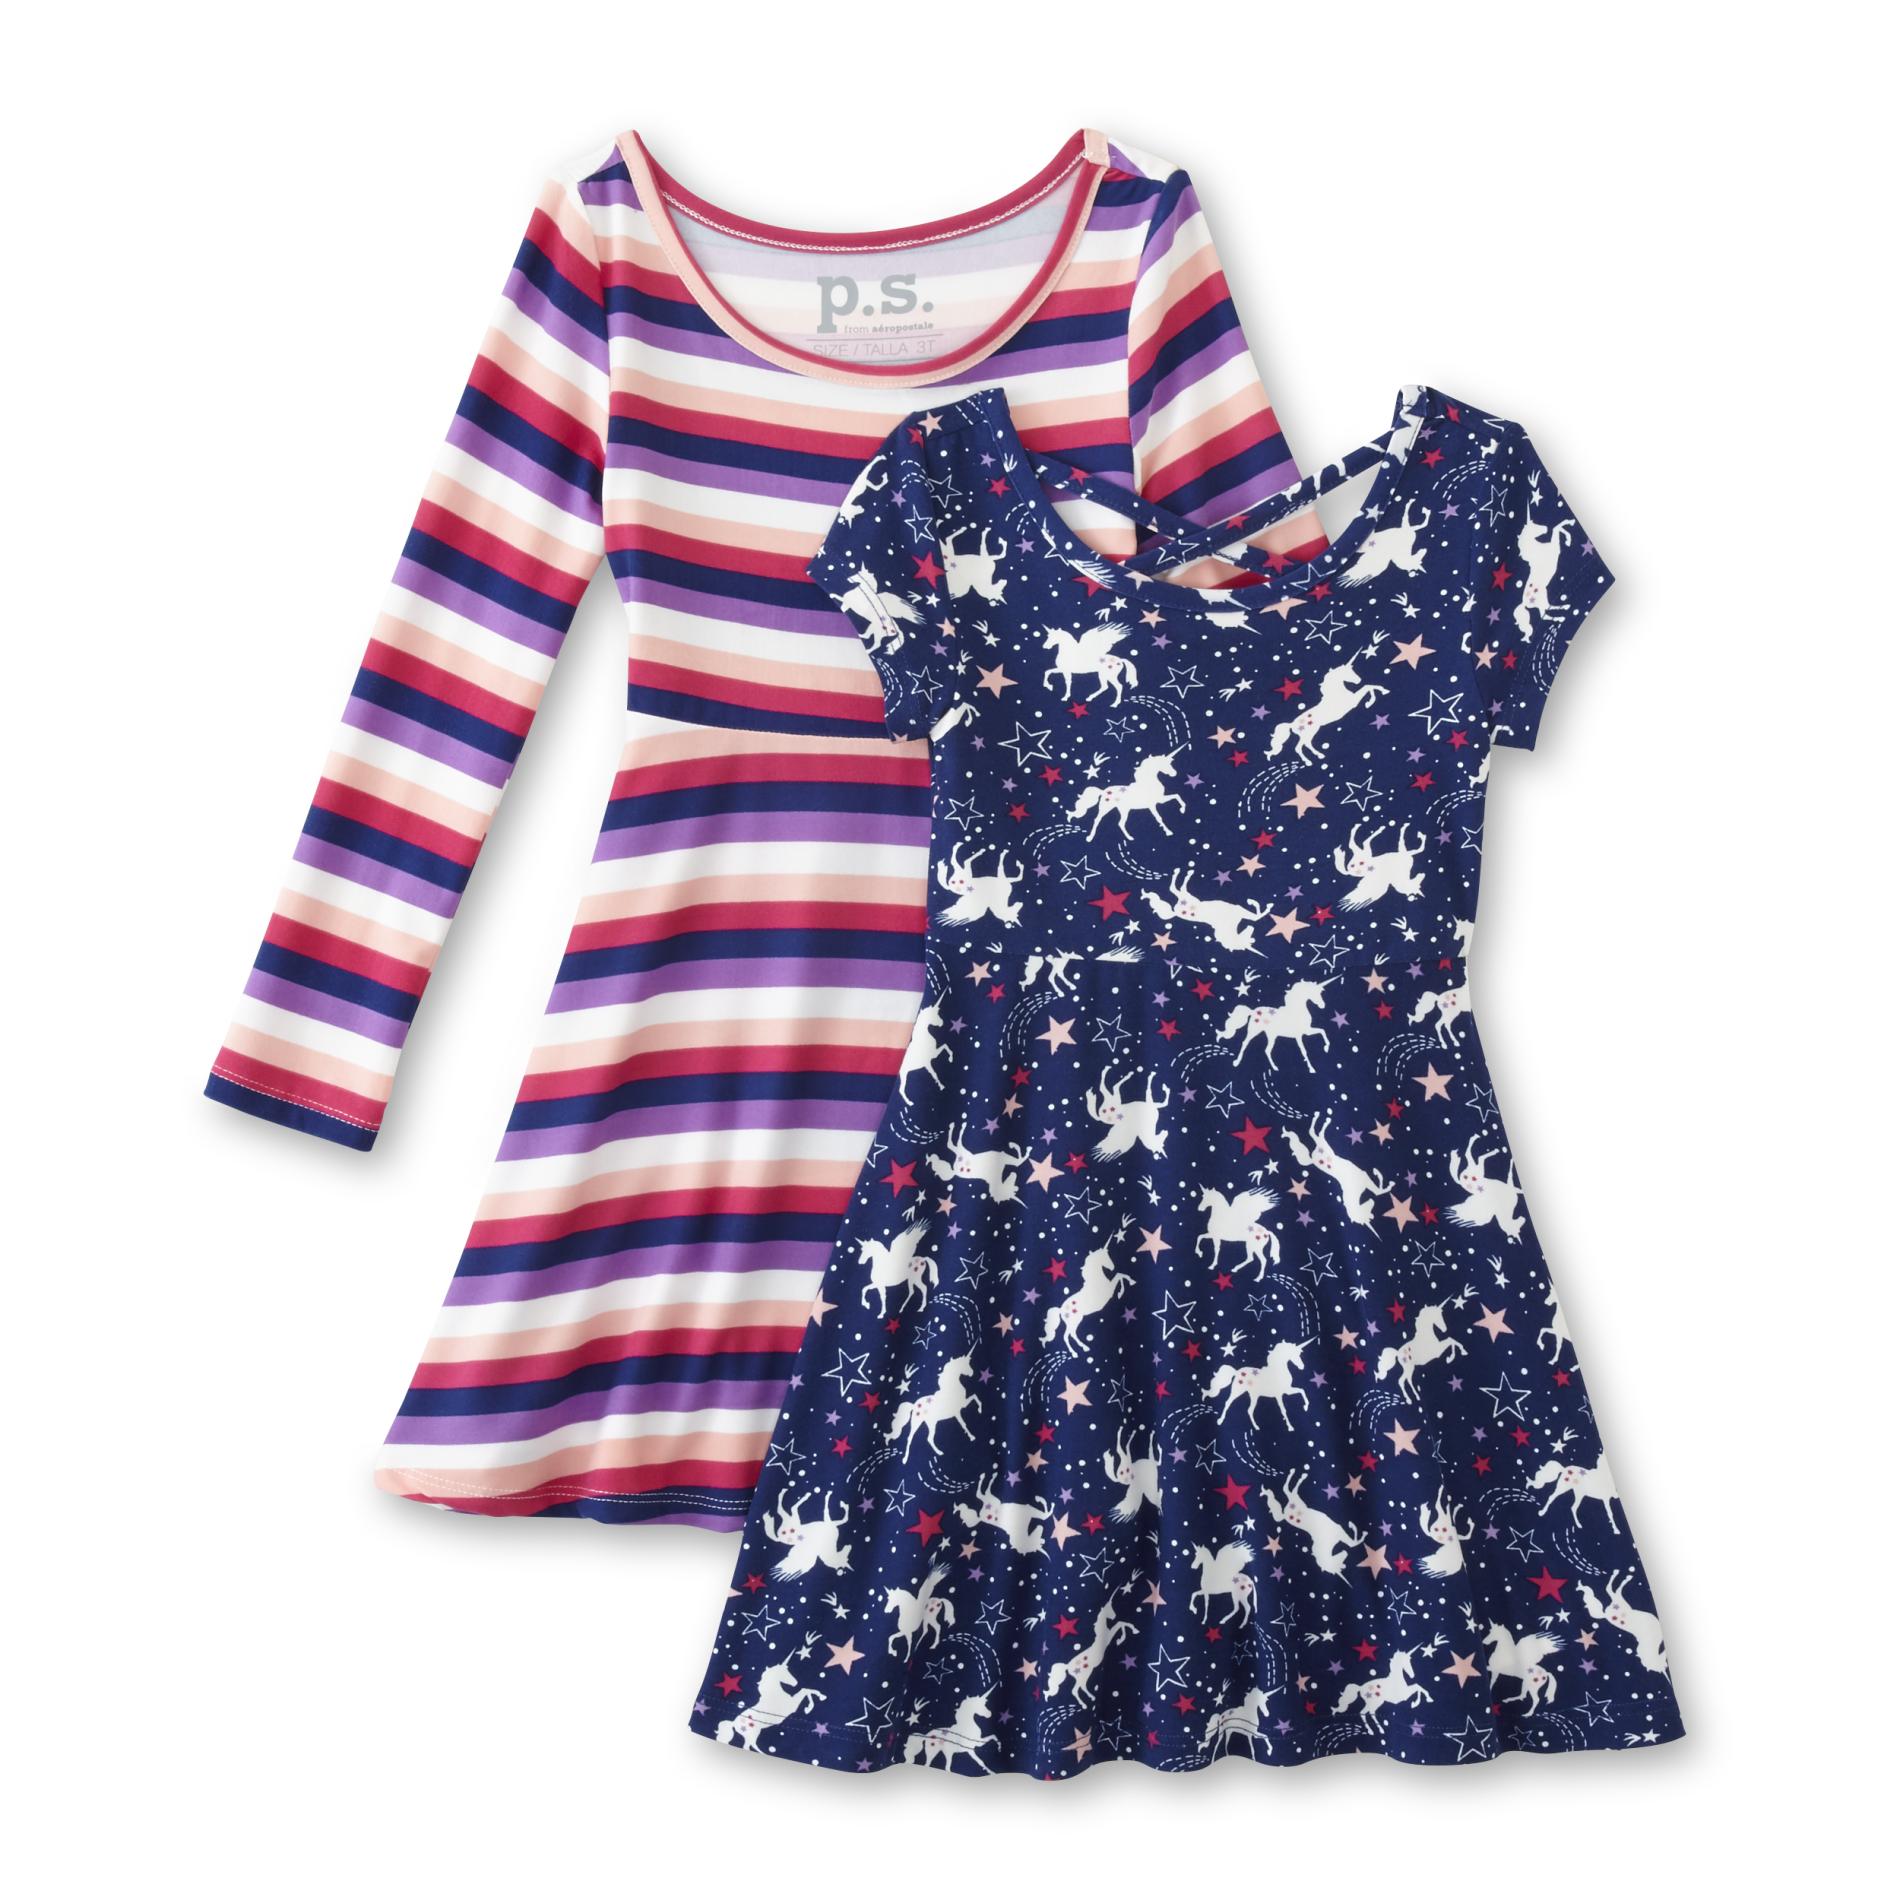 Children's Apparel Toddler Girls' 2-Pack Dresses - Striped/Unicorn